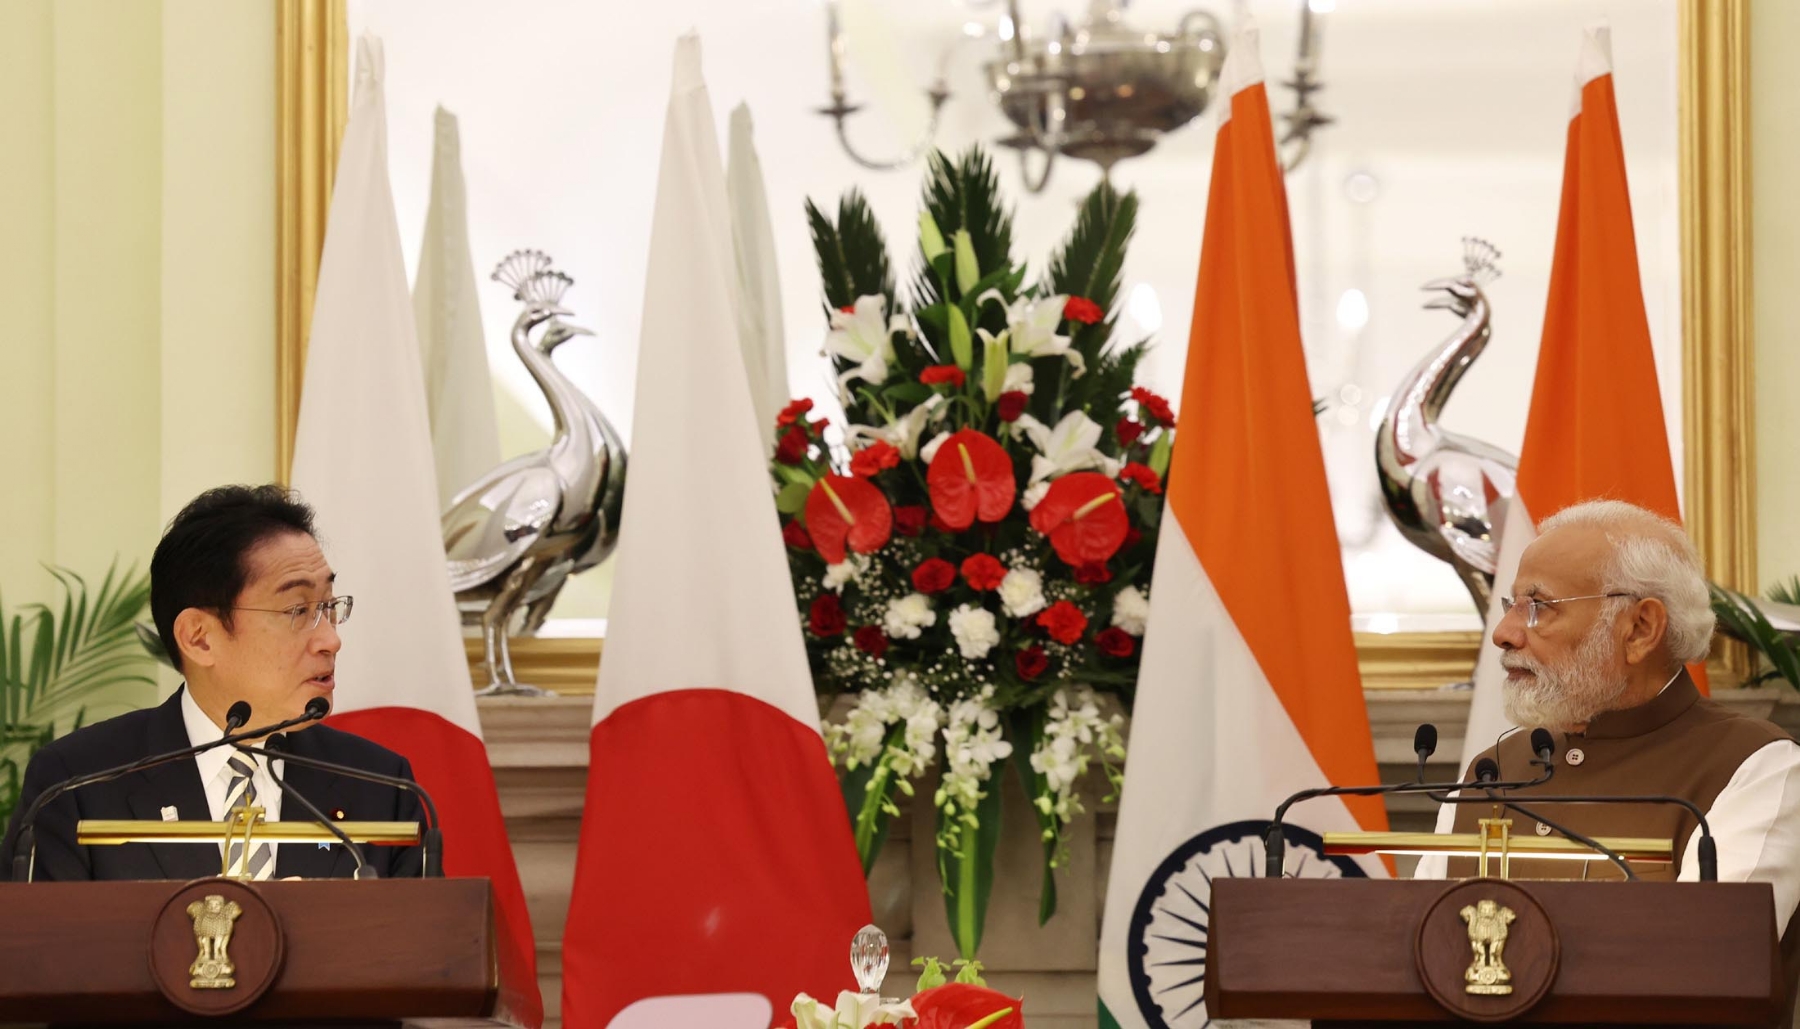 नई दिल्ली में सोमवार 20 मार्च को हैदराबाद हाउस में संयुक्त संवाददाता सम्मेलन को संबोधित करते प्रधानमंत्री नरेन्द्र मोदीऔर जापान के प्रधानमंत्री फुमियो किशिदा। हिन्दुस्थान समाचार/ फोटो गणेश बिष्ट